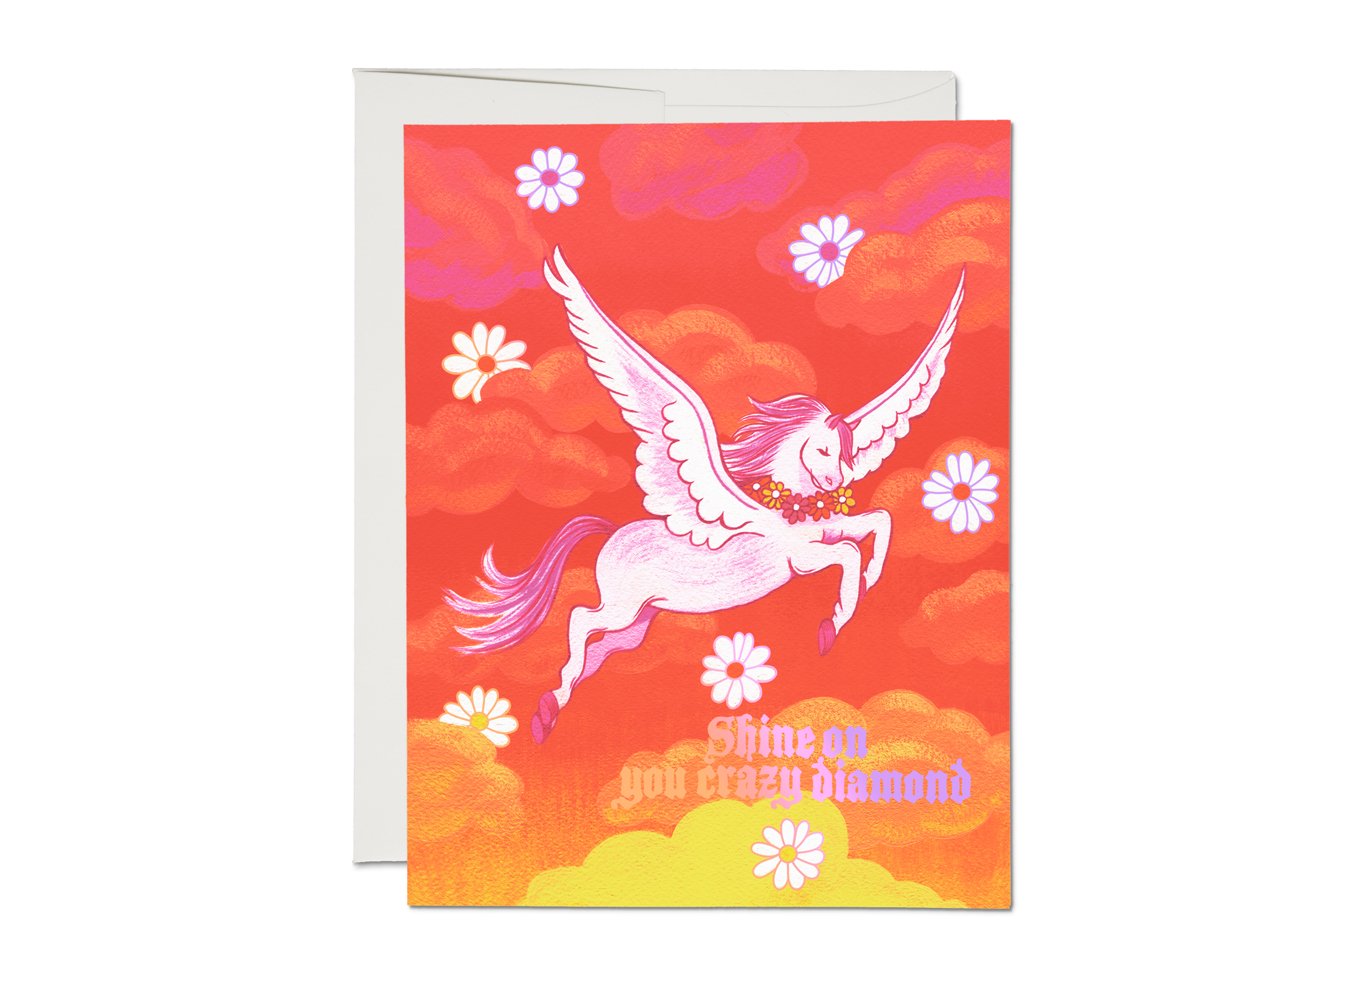 Shine On Pegasus friendship greeting card - Spiral Circle